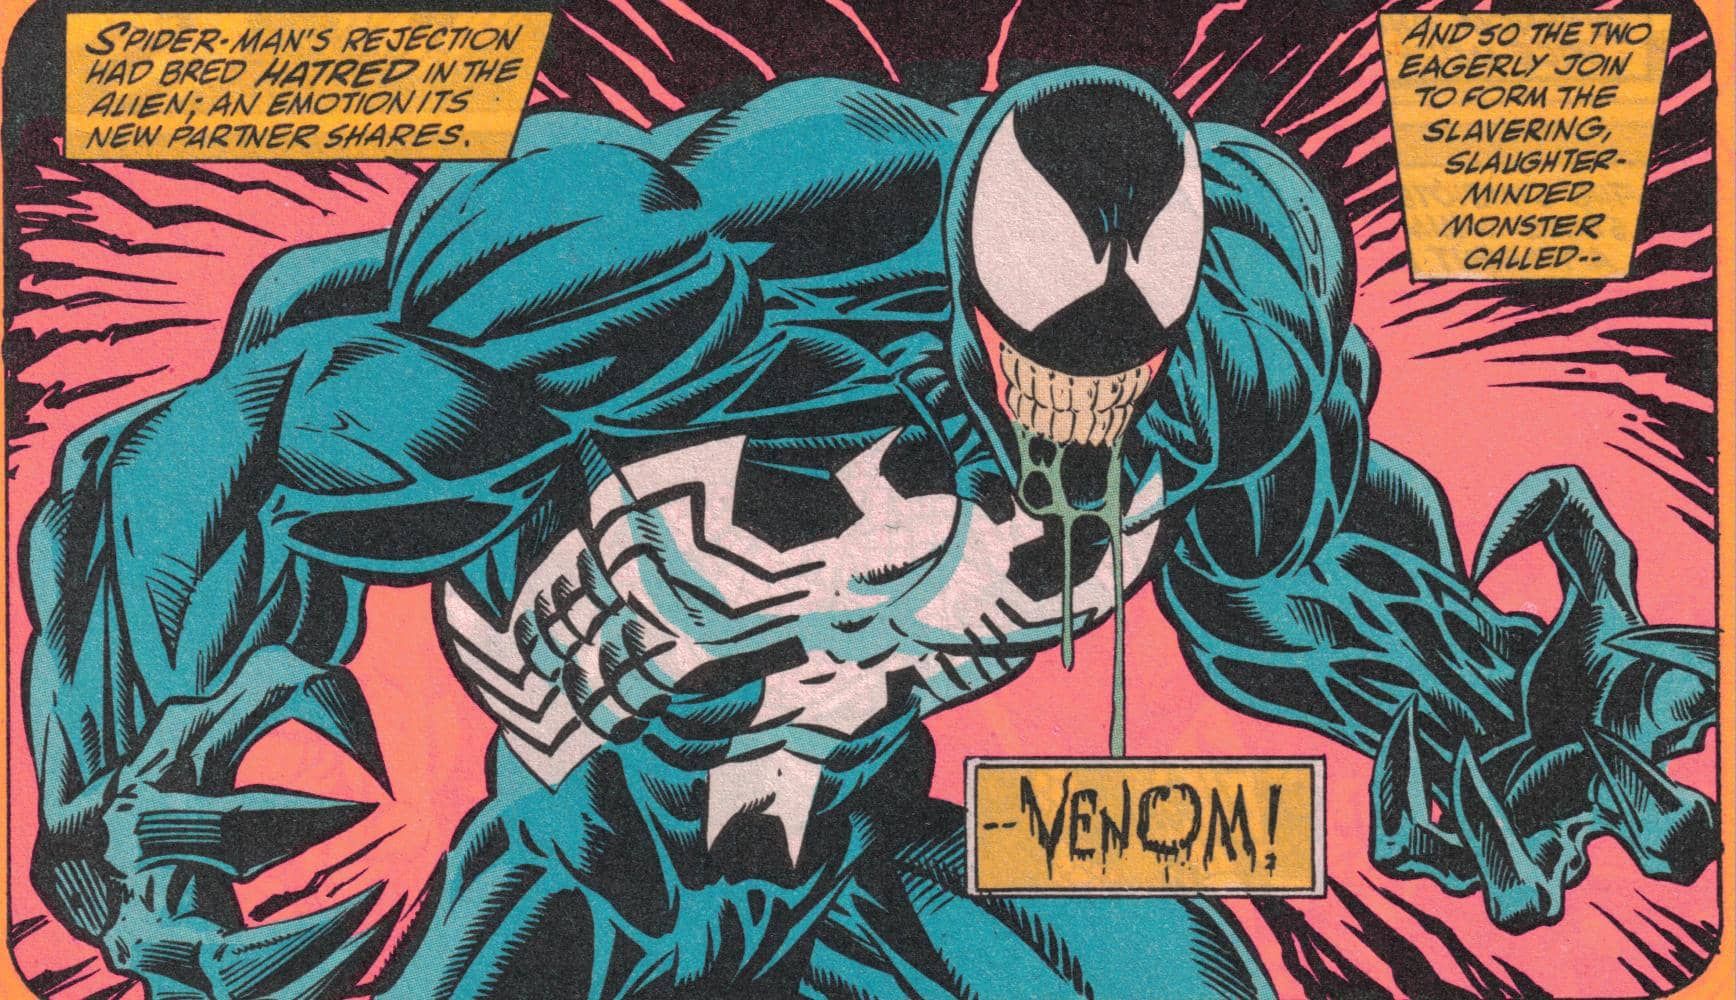 Venom's hatred of Spider-Man